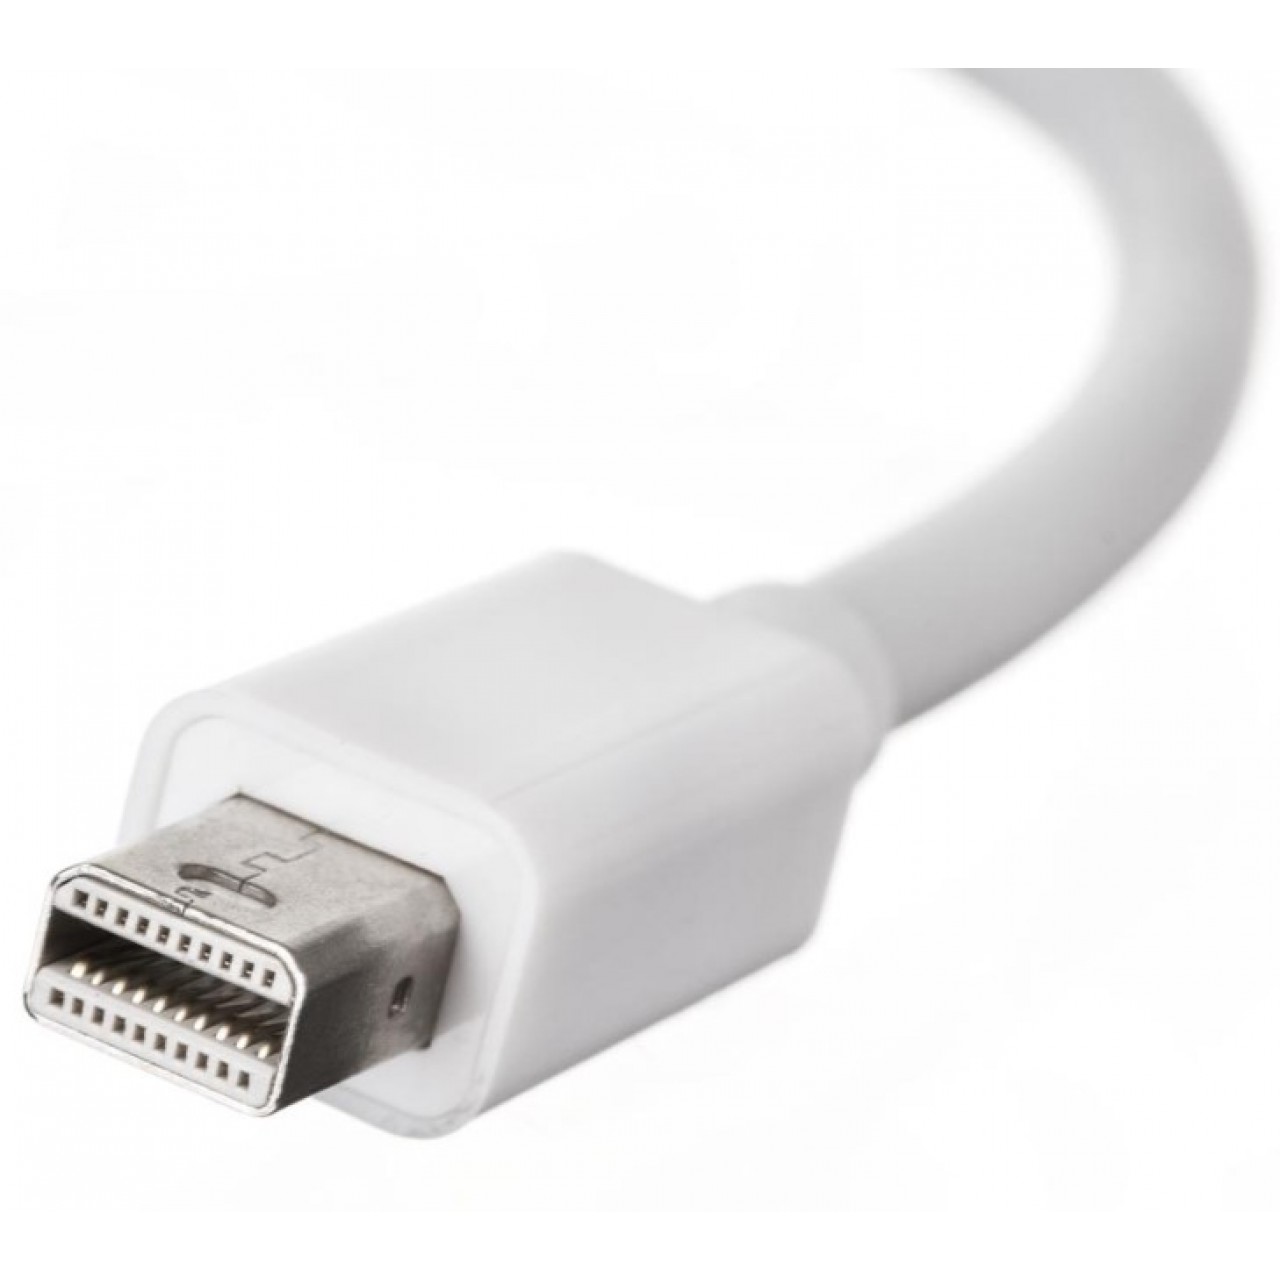 Καλώδιο μετατροπέας Thunderbolt / mini DisplayPort to DVI Adapter - 3642 - Λευκό - OEM